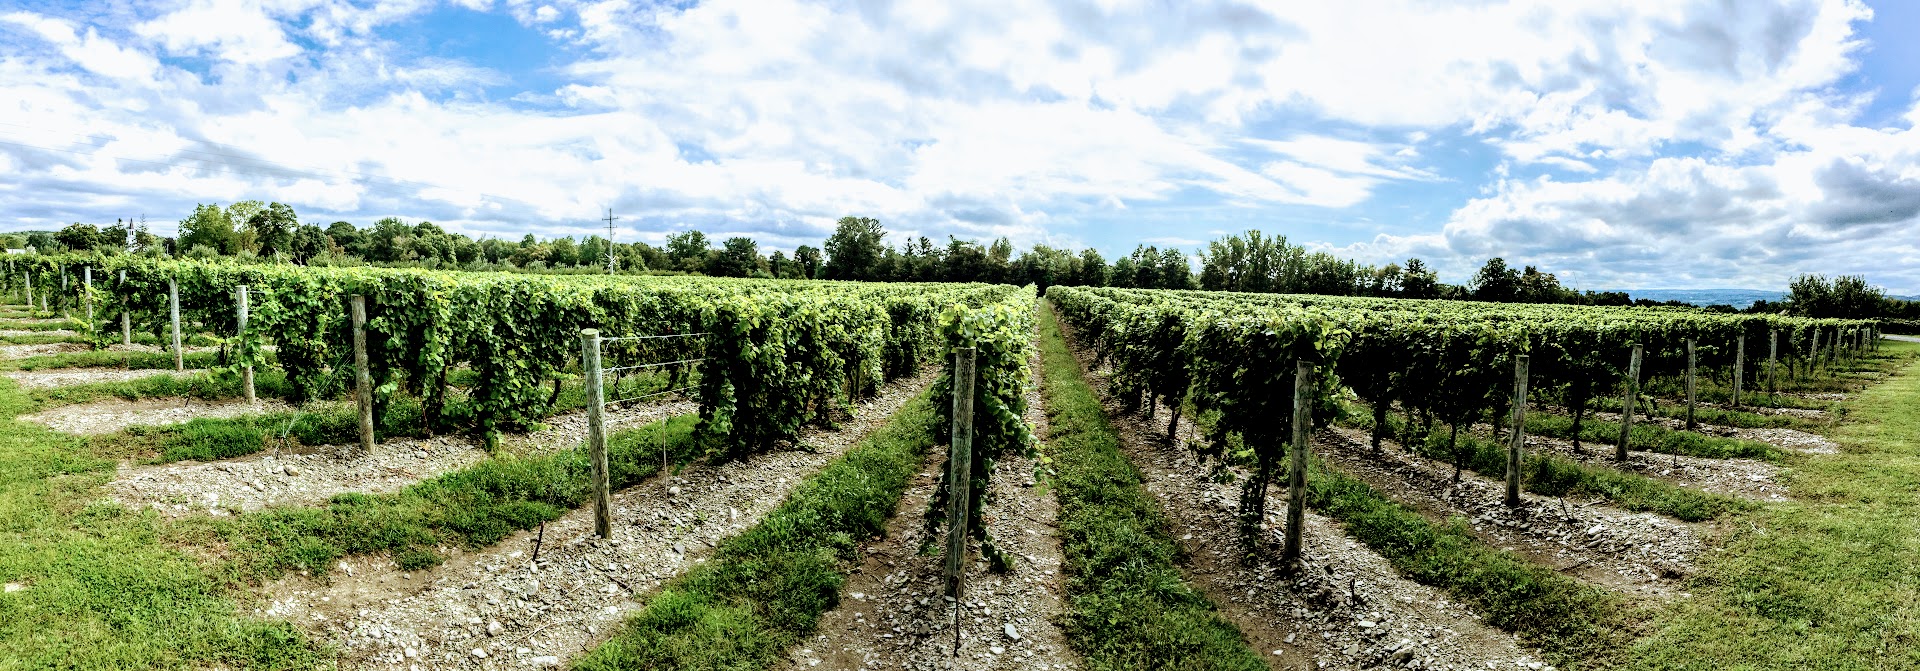 panoramic view of the vineyard